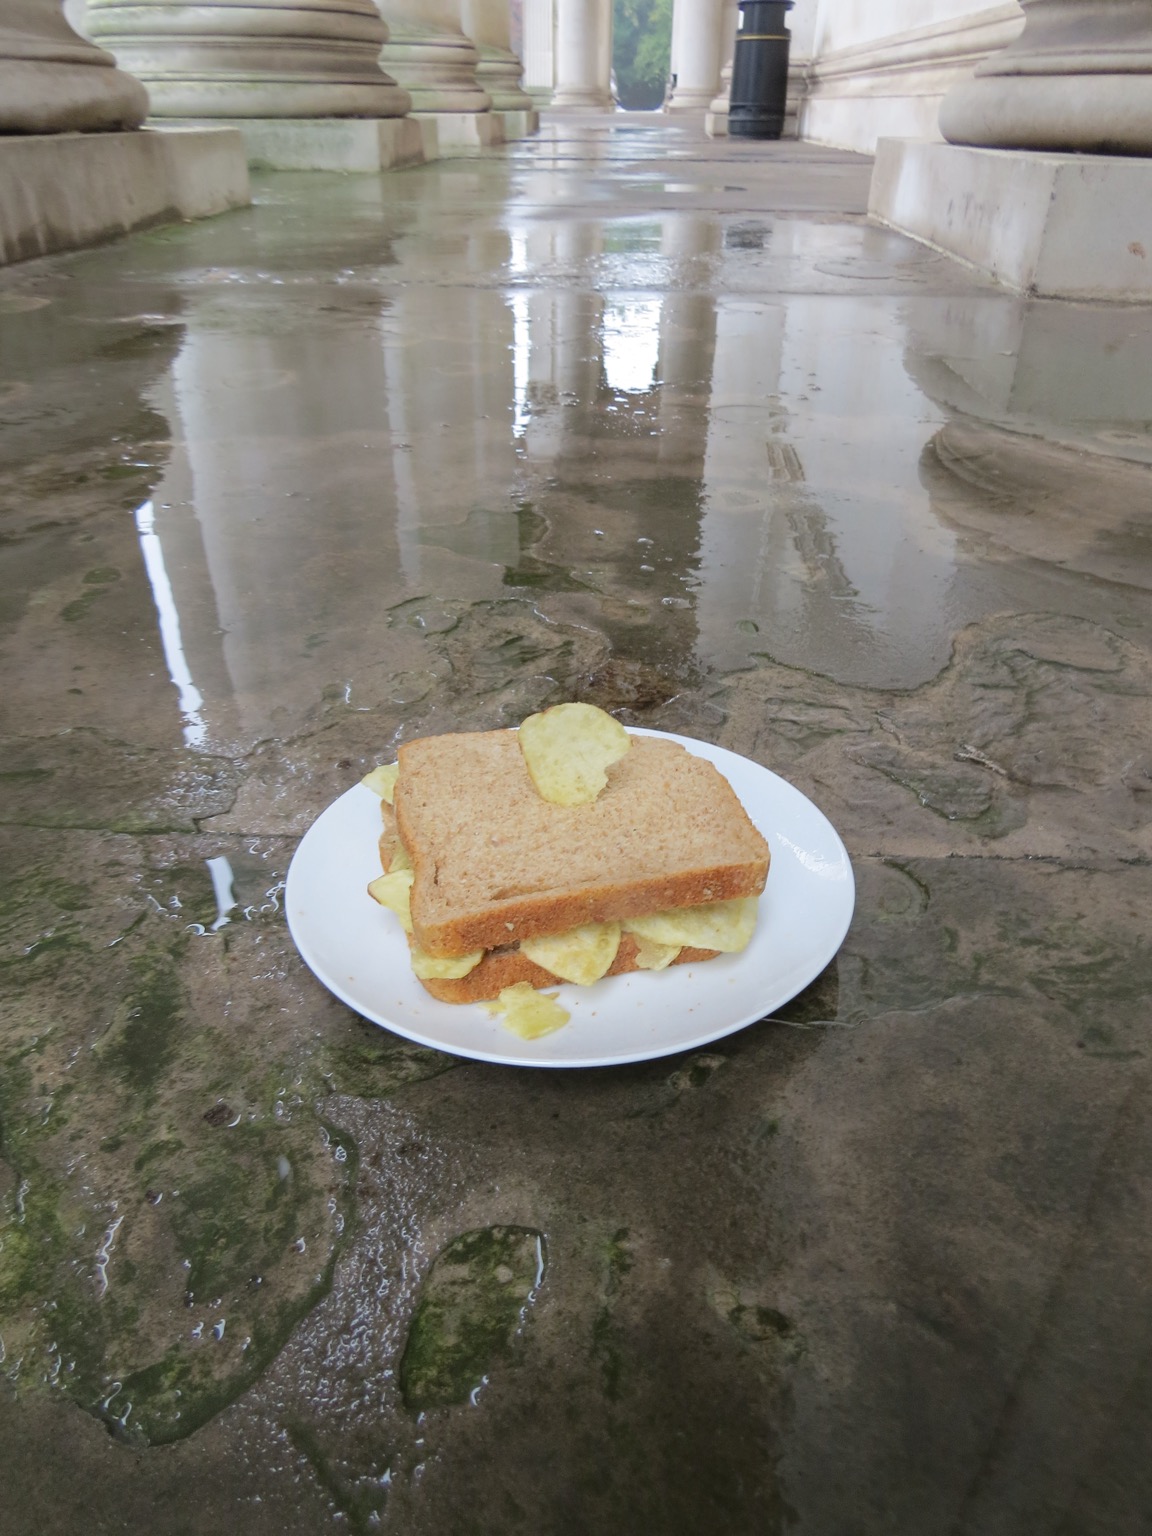 Crisp sandwich with crisp stuck in it on a wet stone floor